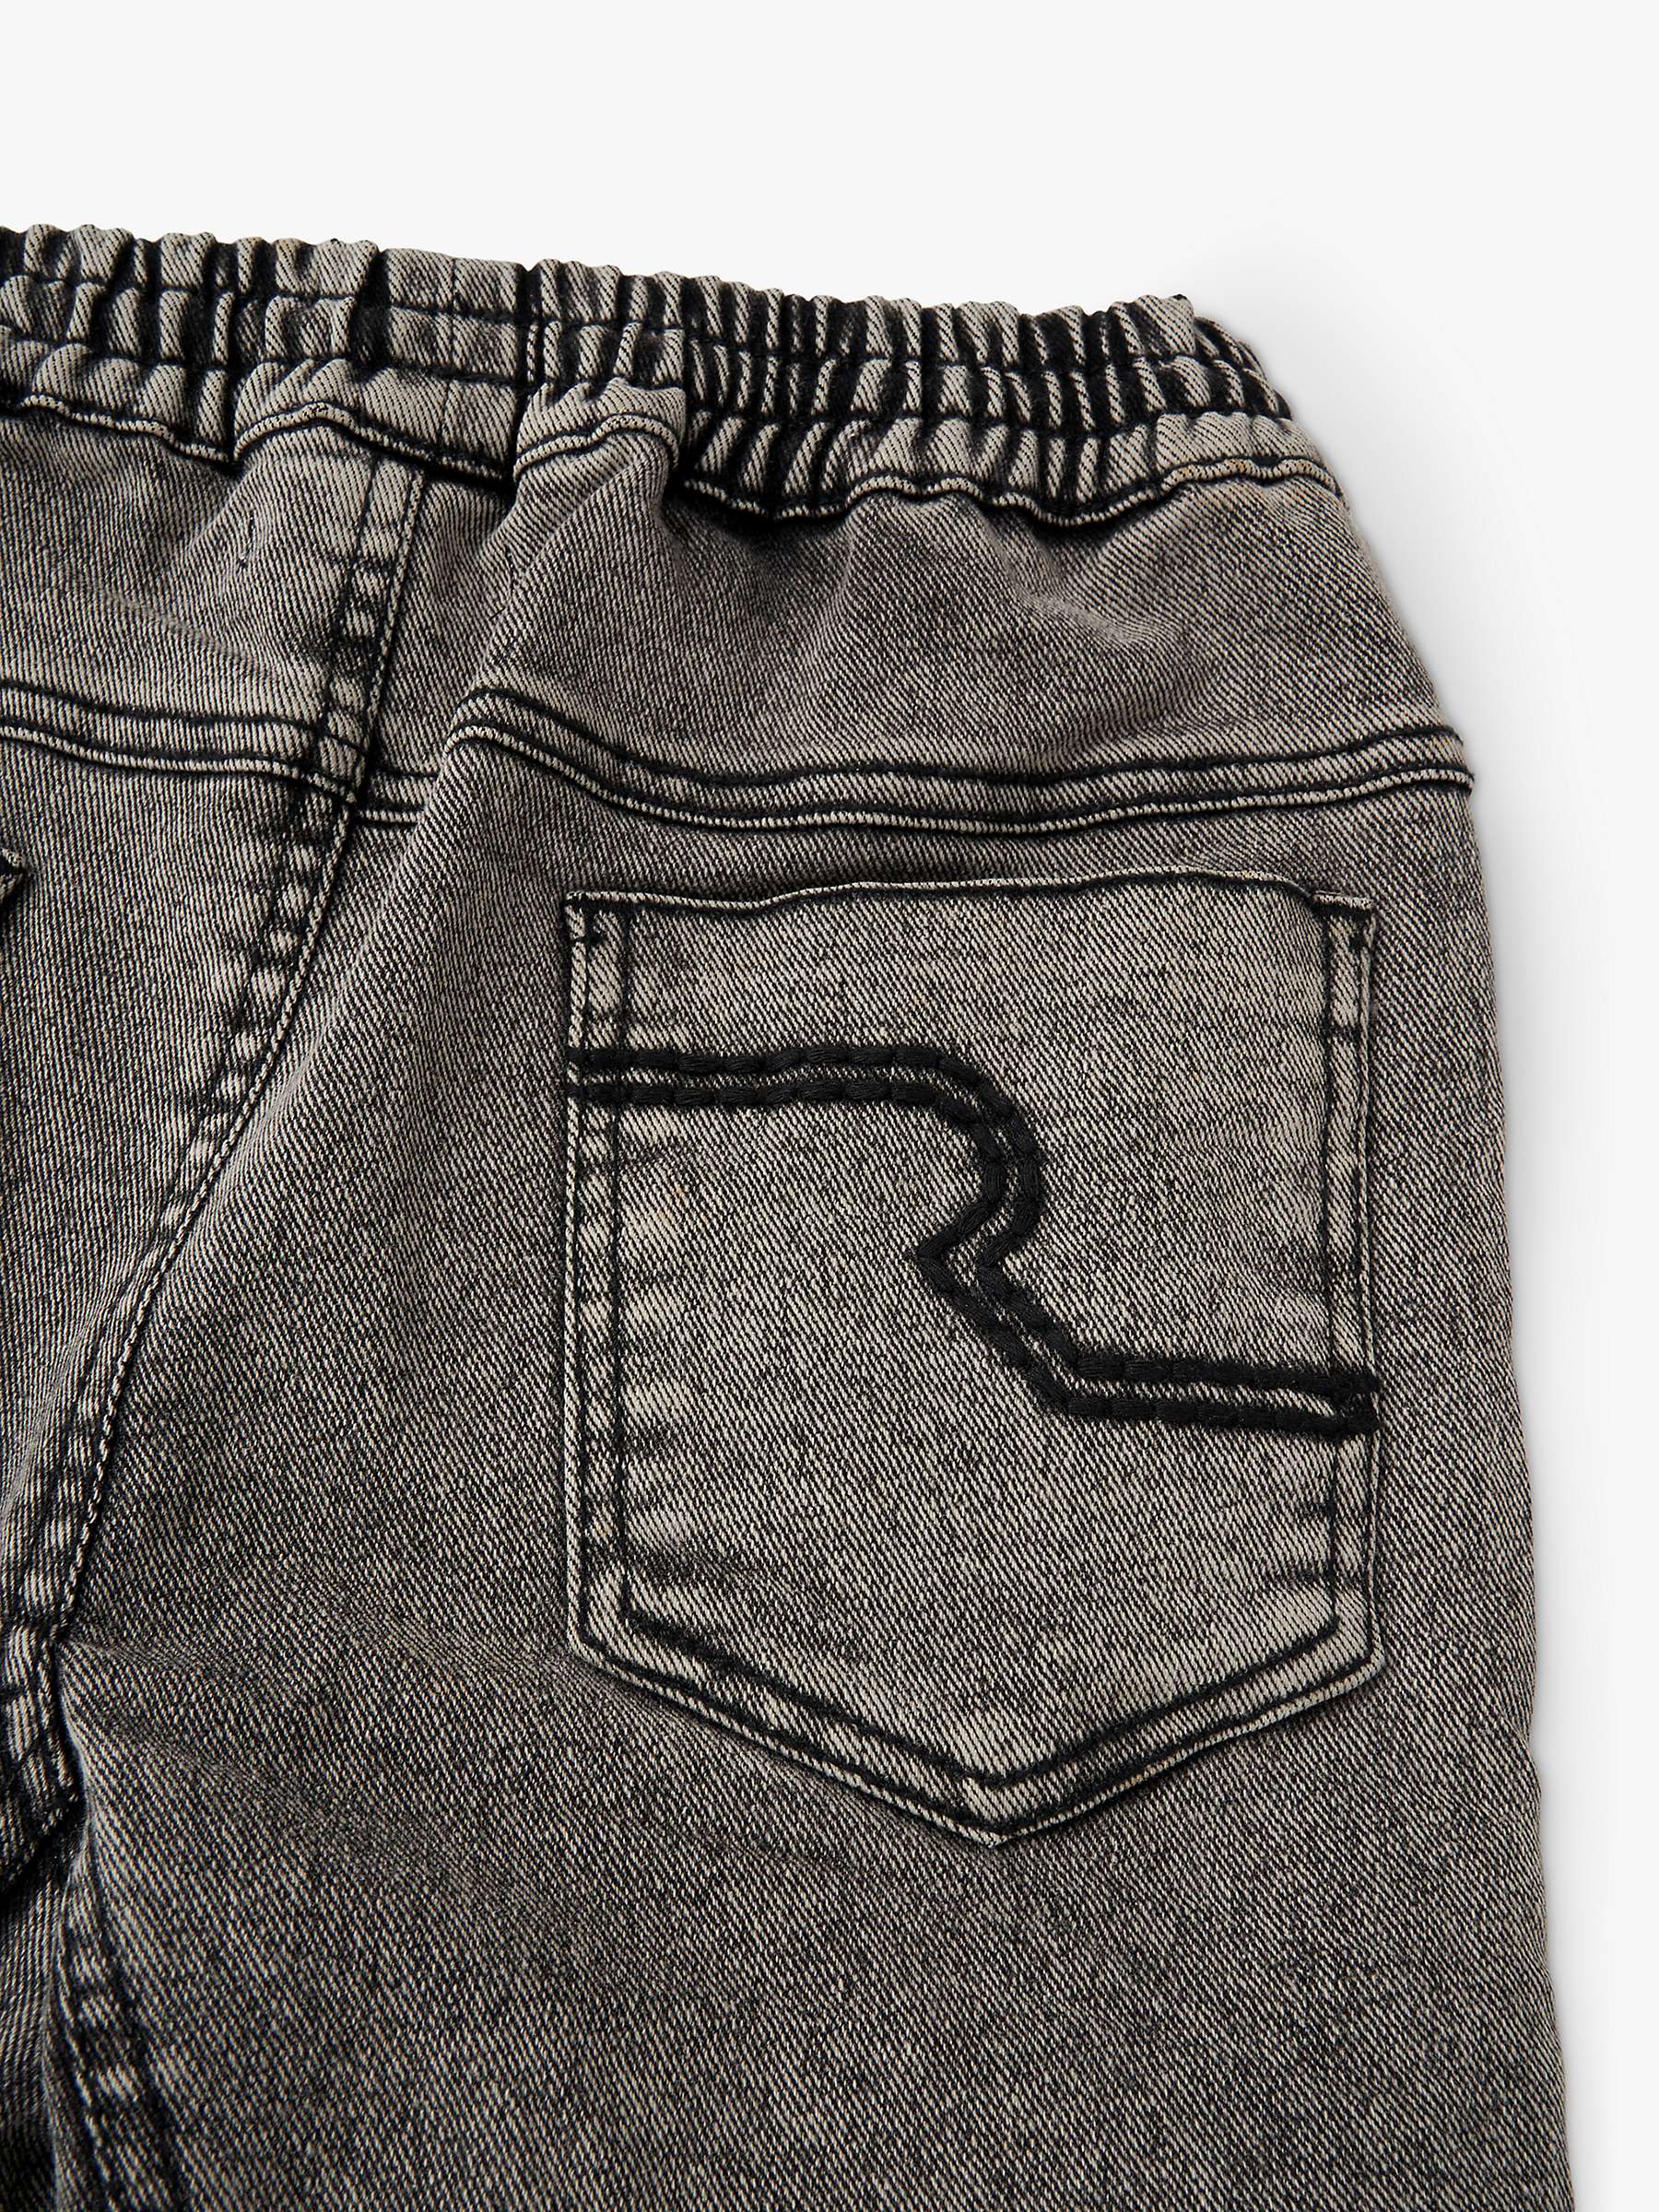 Buy Angel & Rocket Boys' Nile Washed Jogger Jeans, Grey Online at johnlewis.com